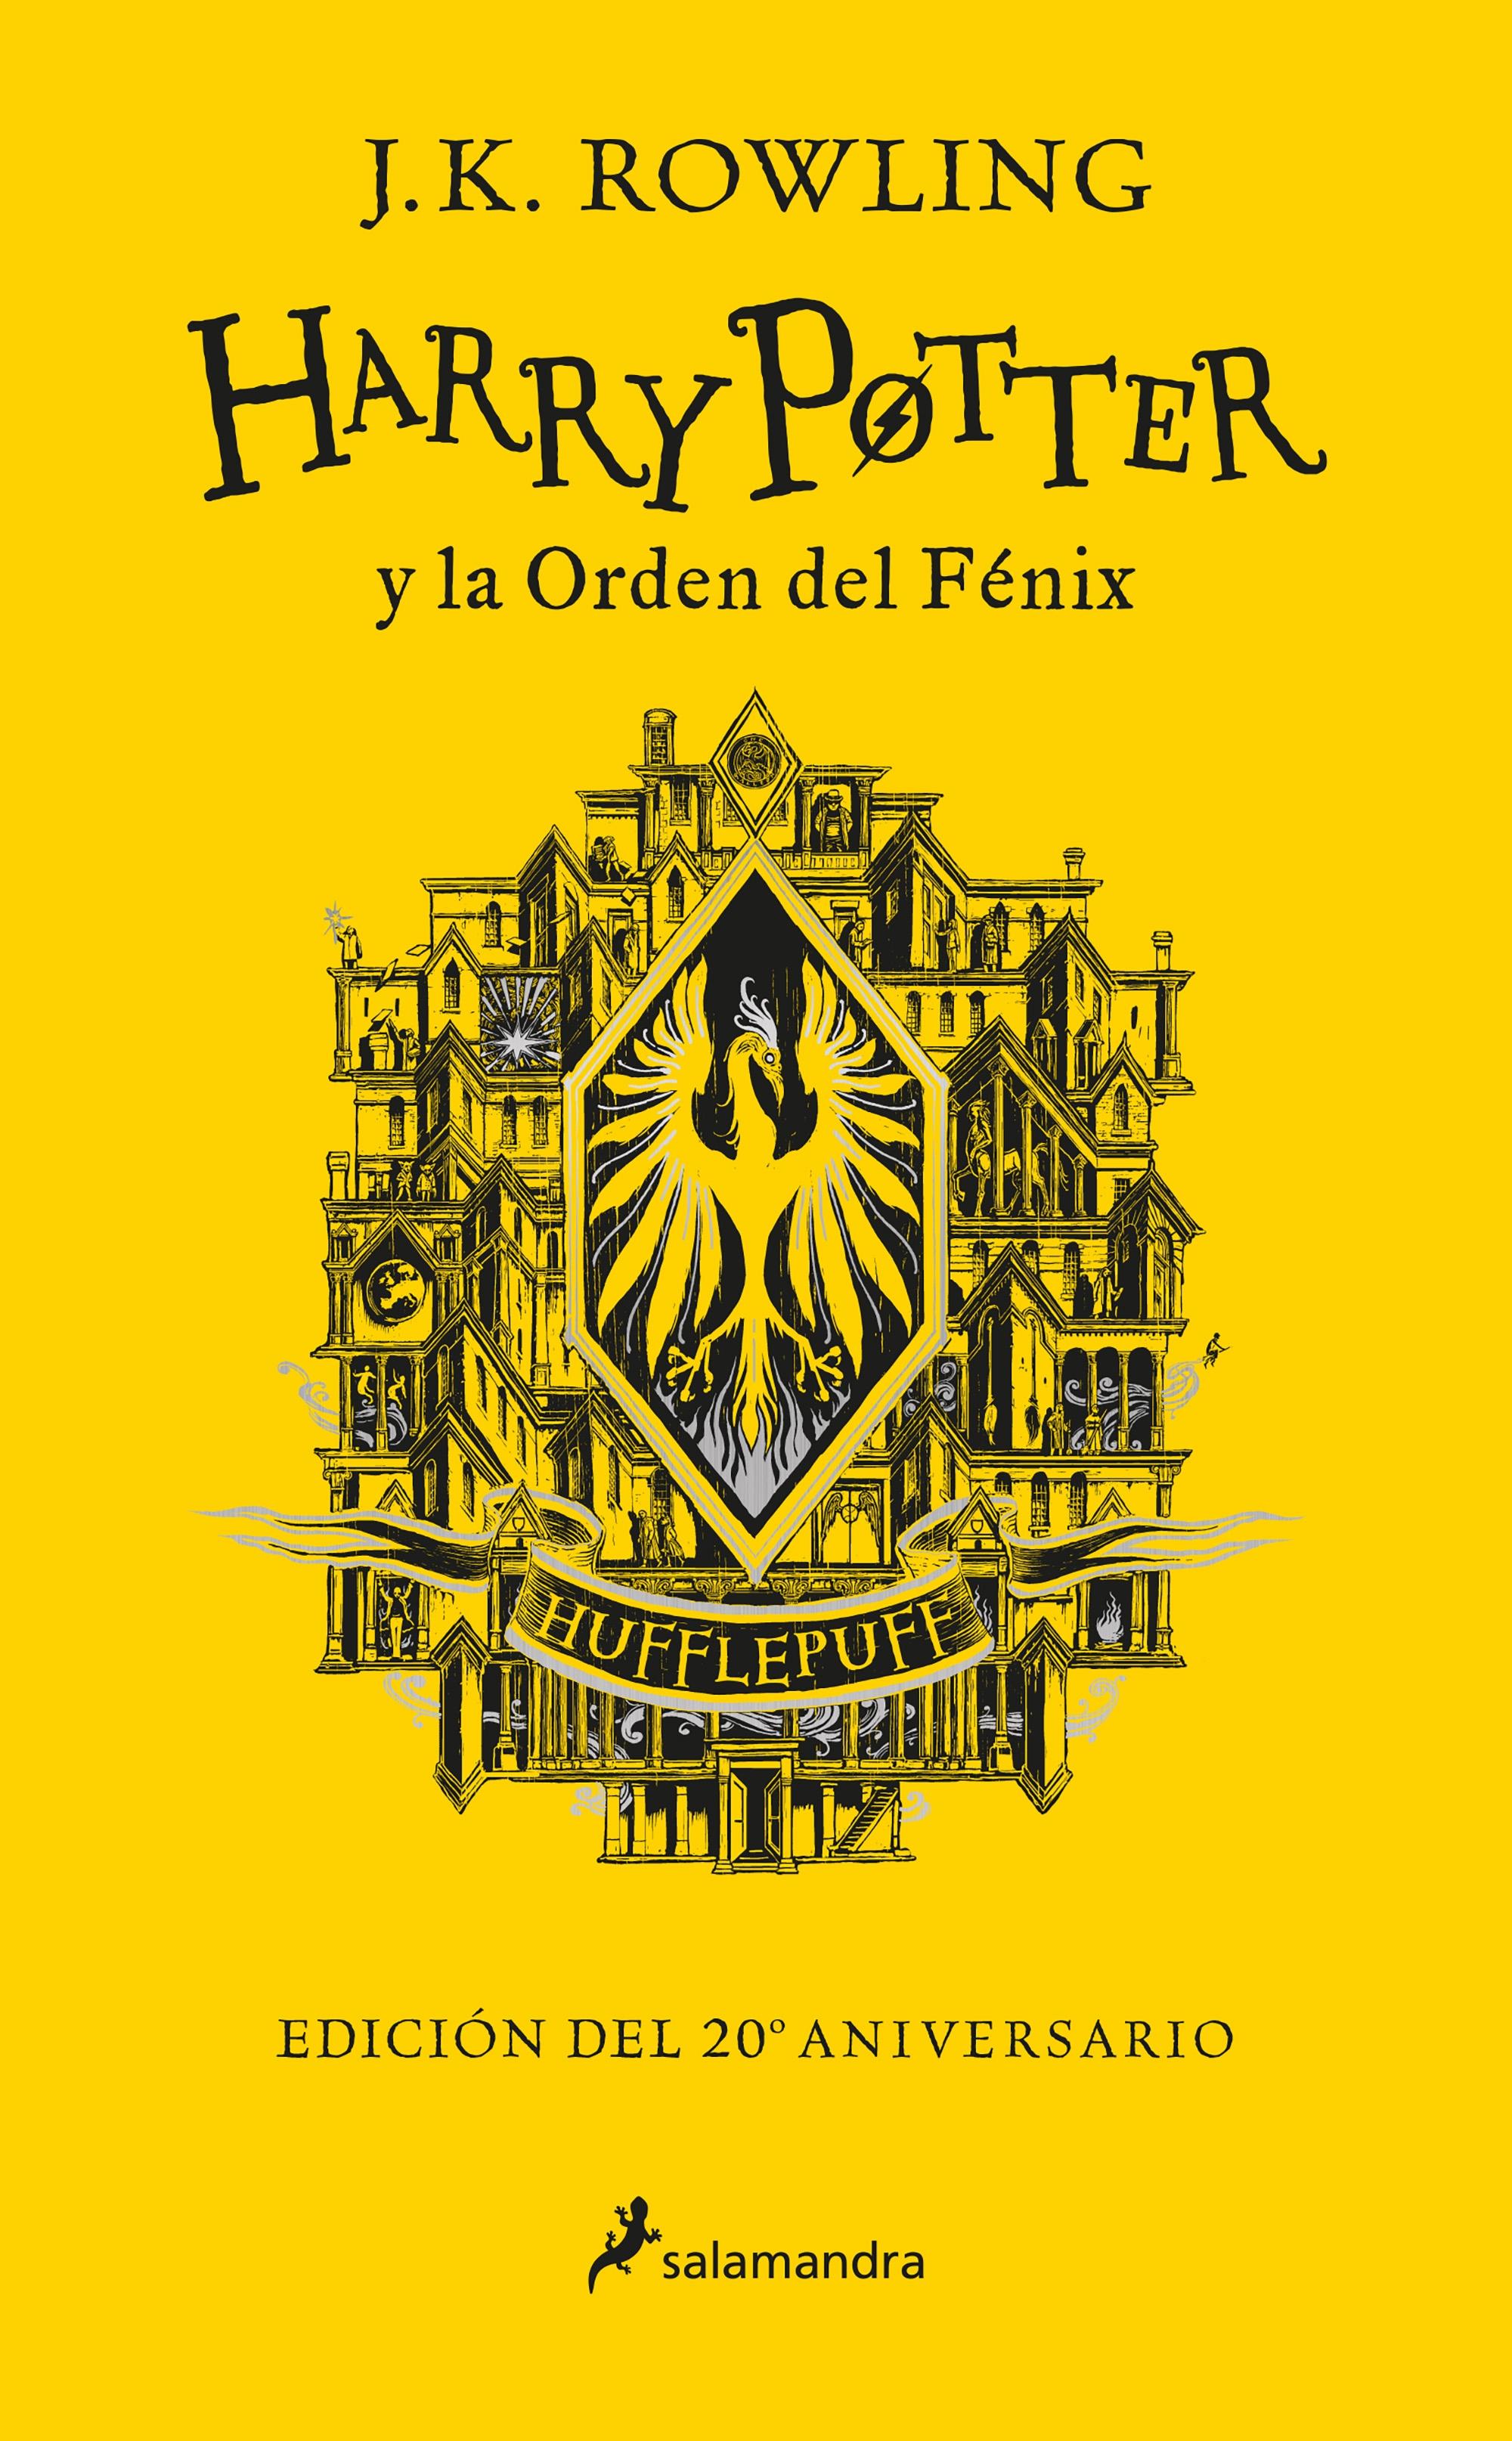 Harry Potter y la Orden del Fenix Edicion "Edicion Hufflepuff del 20º Aniversario". 